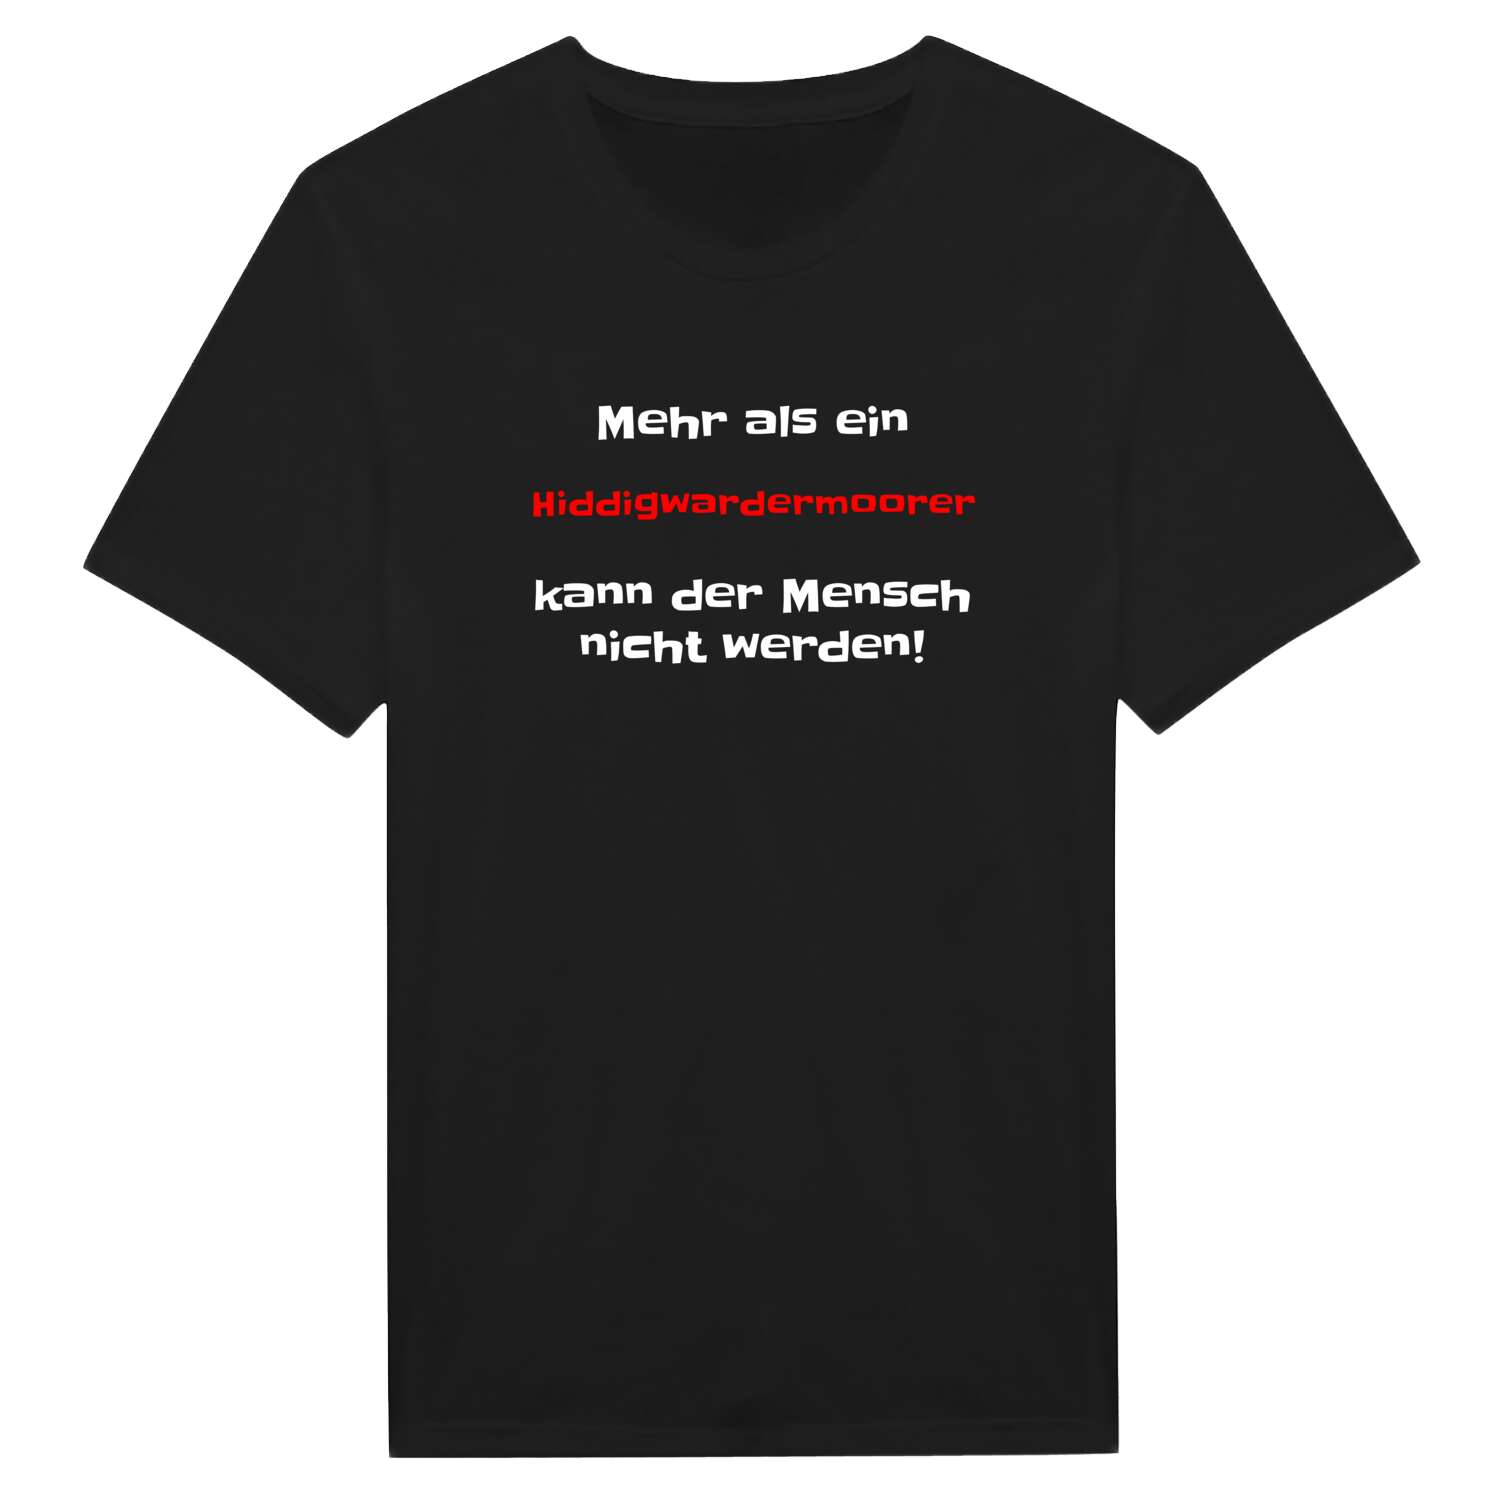 Hiddigwardermoor T-Shirt »Mehr als ein«